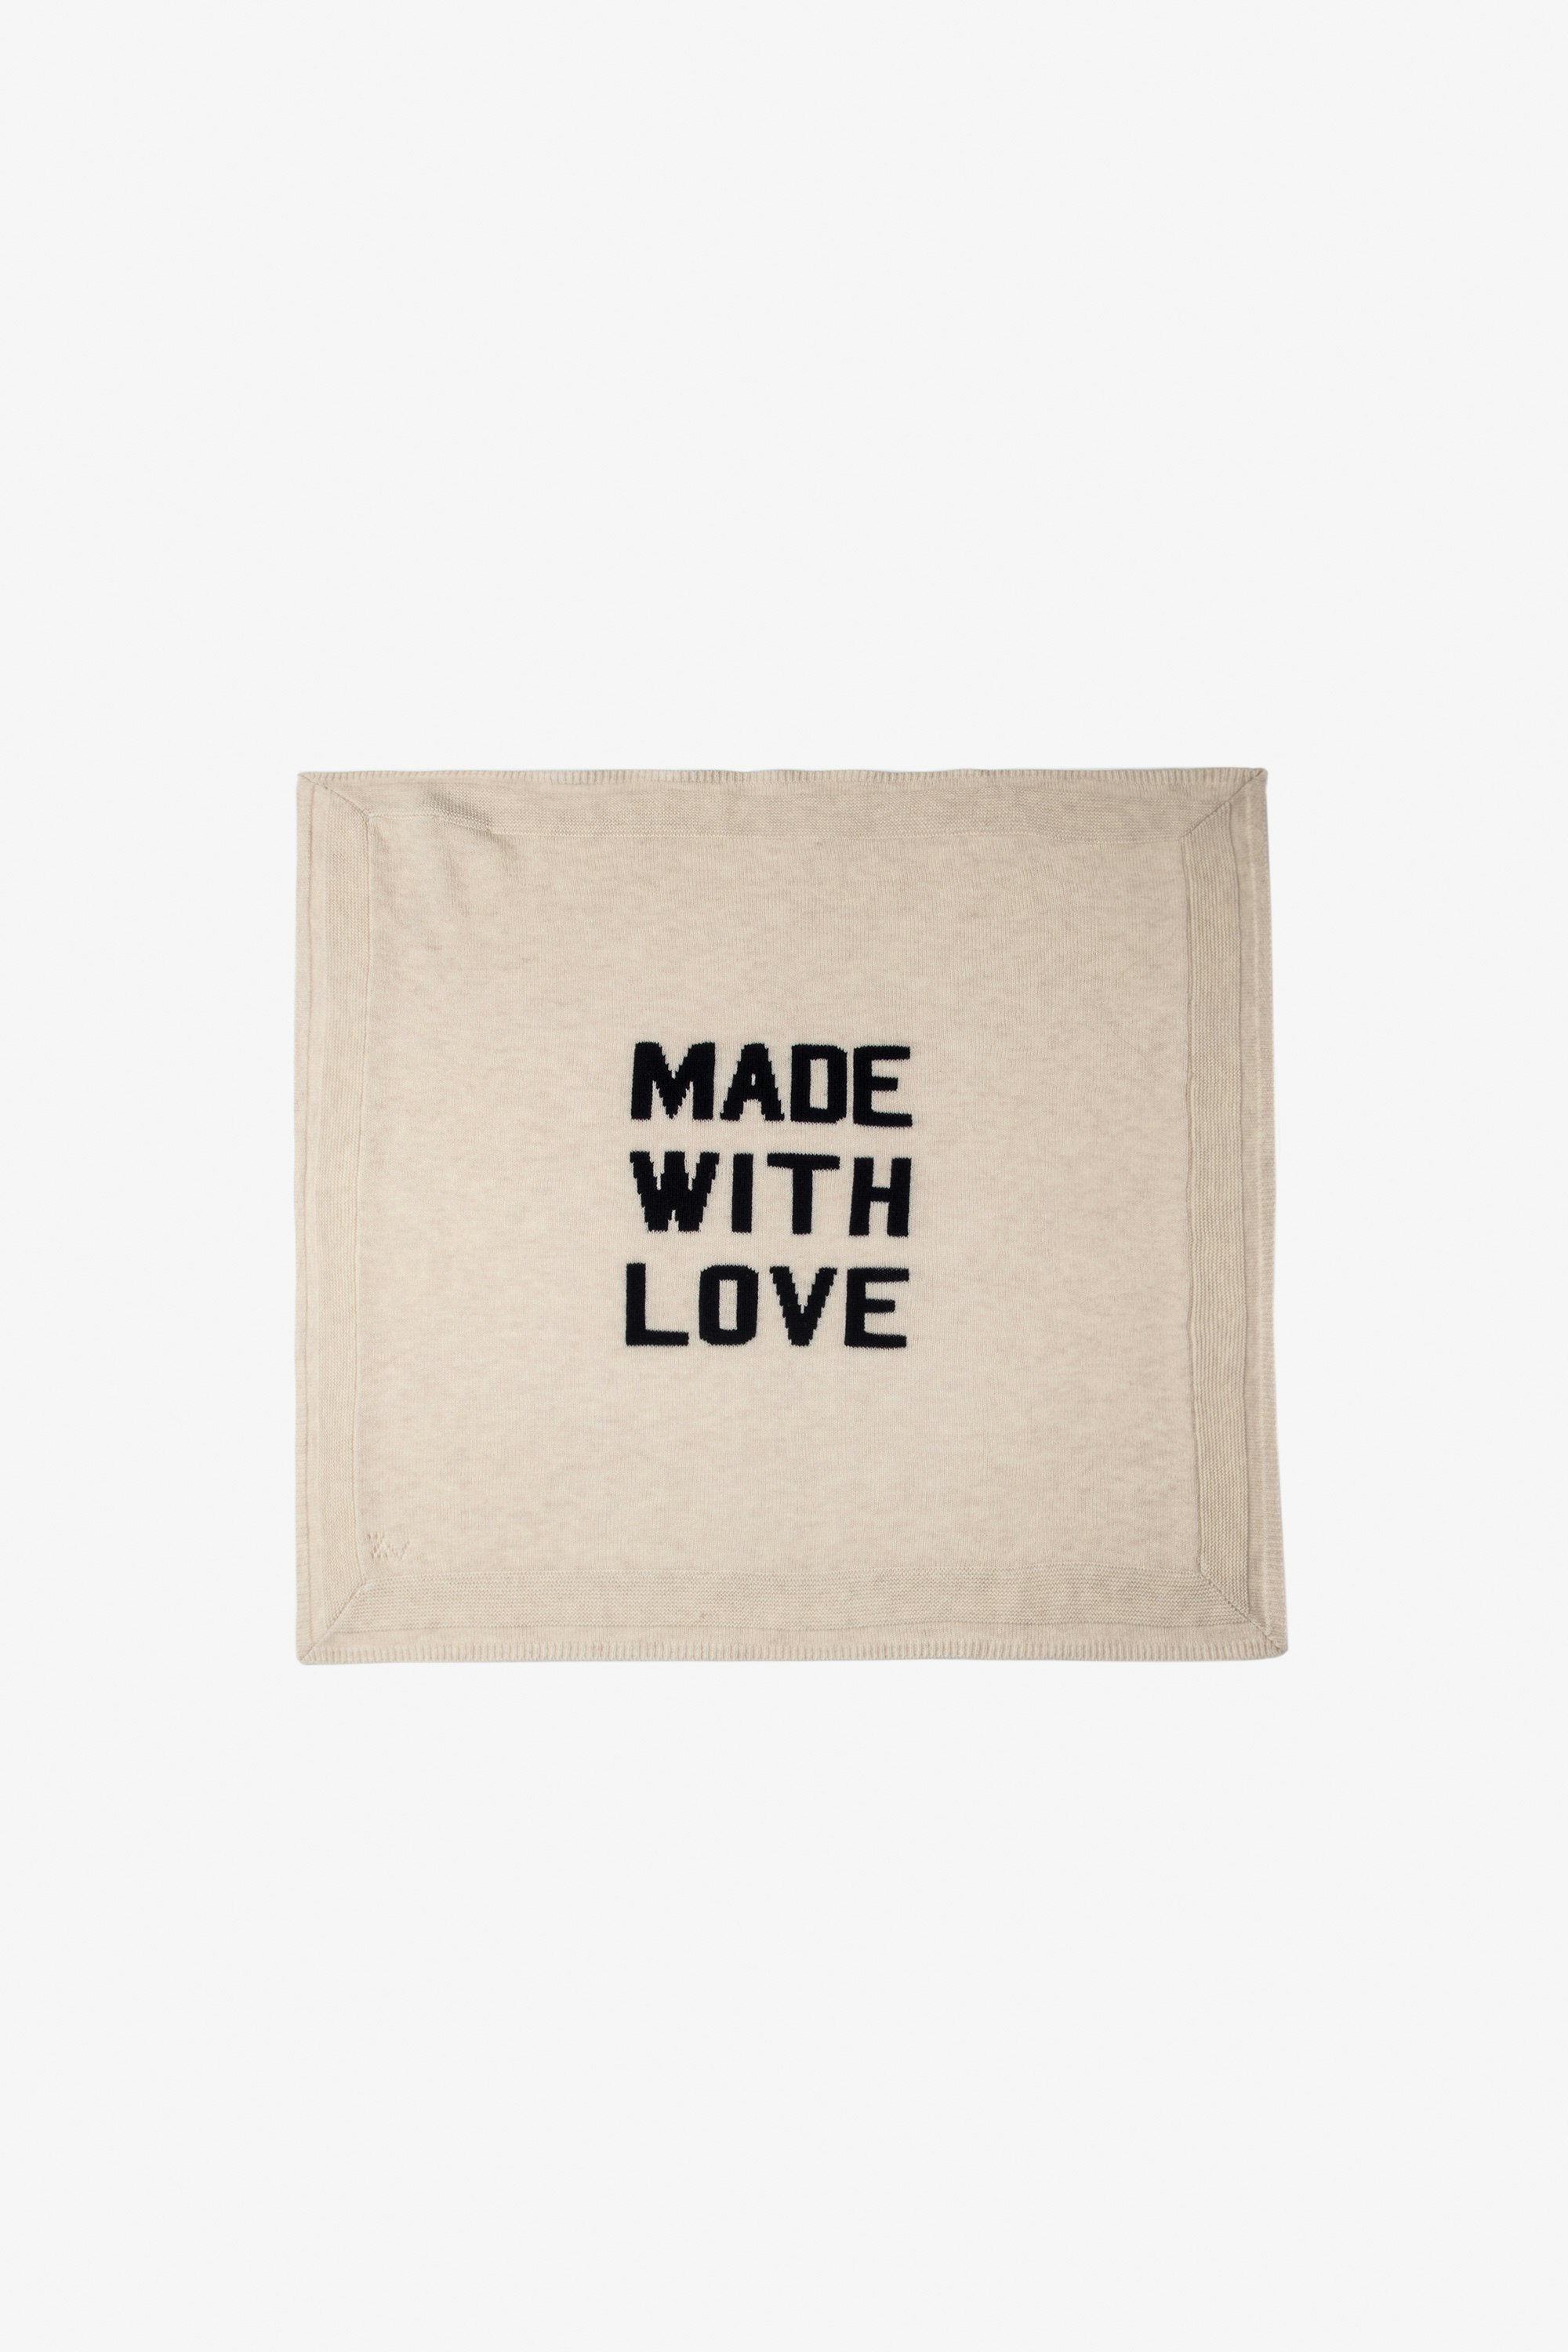 Couverture Maya Bébé - Couverture en maille tricot écrue ornée d'un message "Made With Love" bébé.